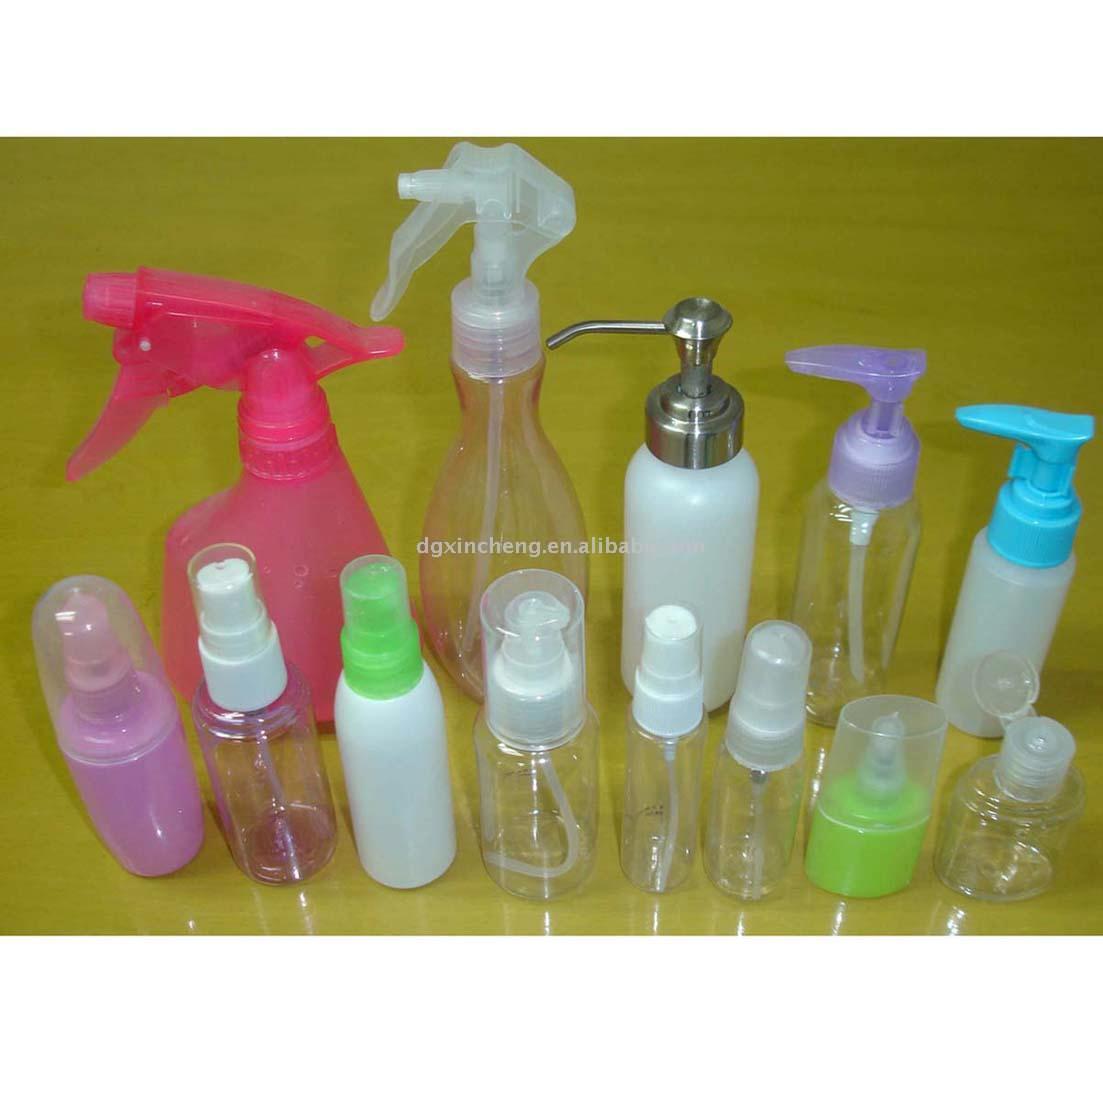  Plastic Cosmetic Spray Bottles (Косметический спрей пластиковые бутылки)